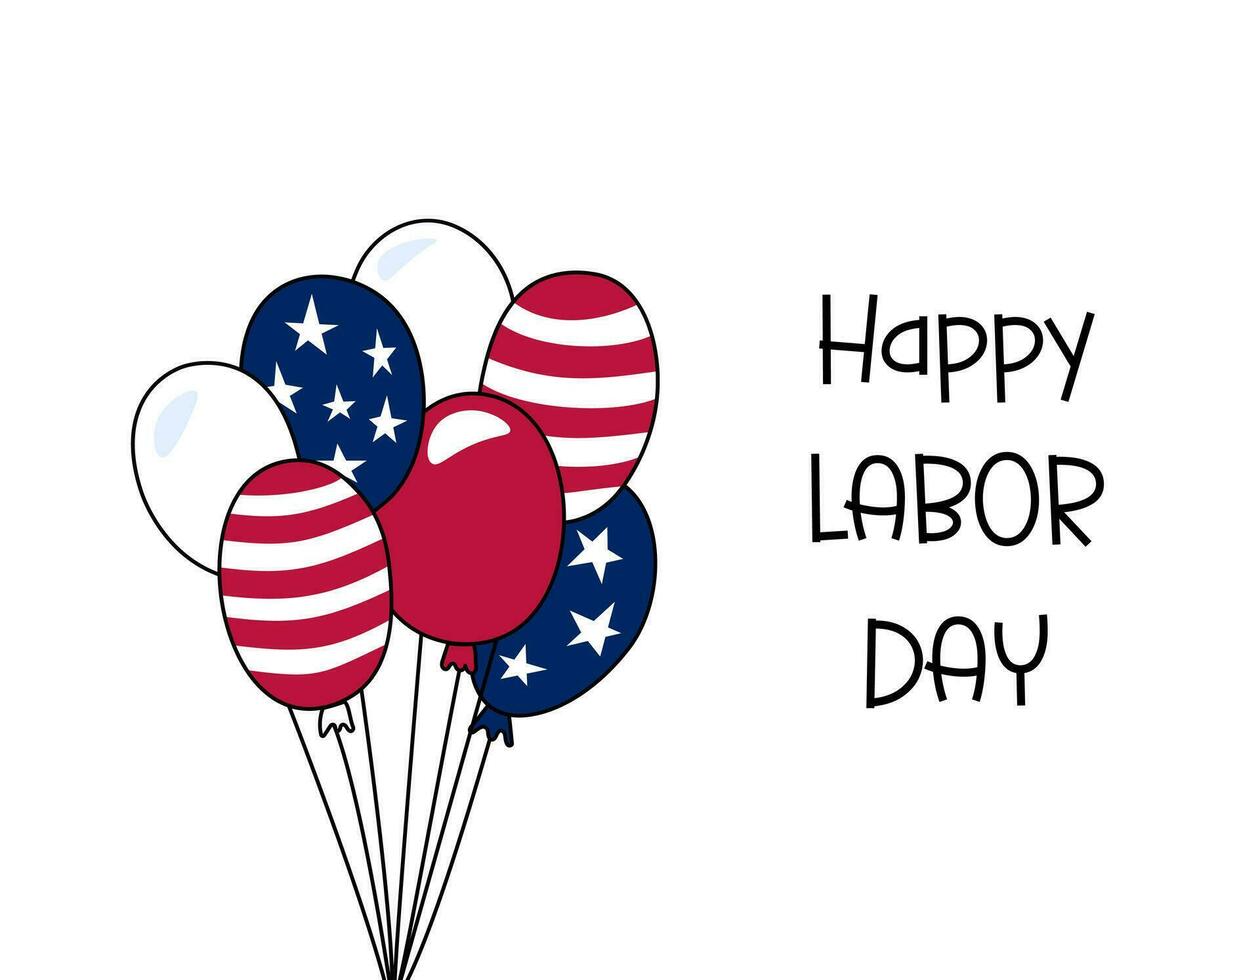 gelukkig arbeid dag groet kaart, poster, spandoek. Amerikaans arbeid dag viering. tekst en tekening ballonnen in kleuren van Verenigde Staten van Amerika vlag. vector illustratie